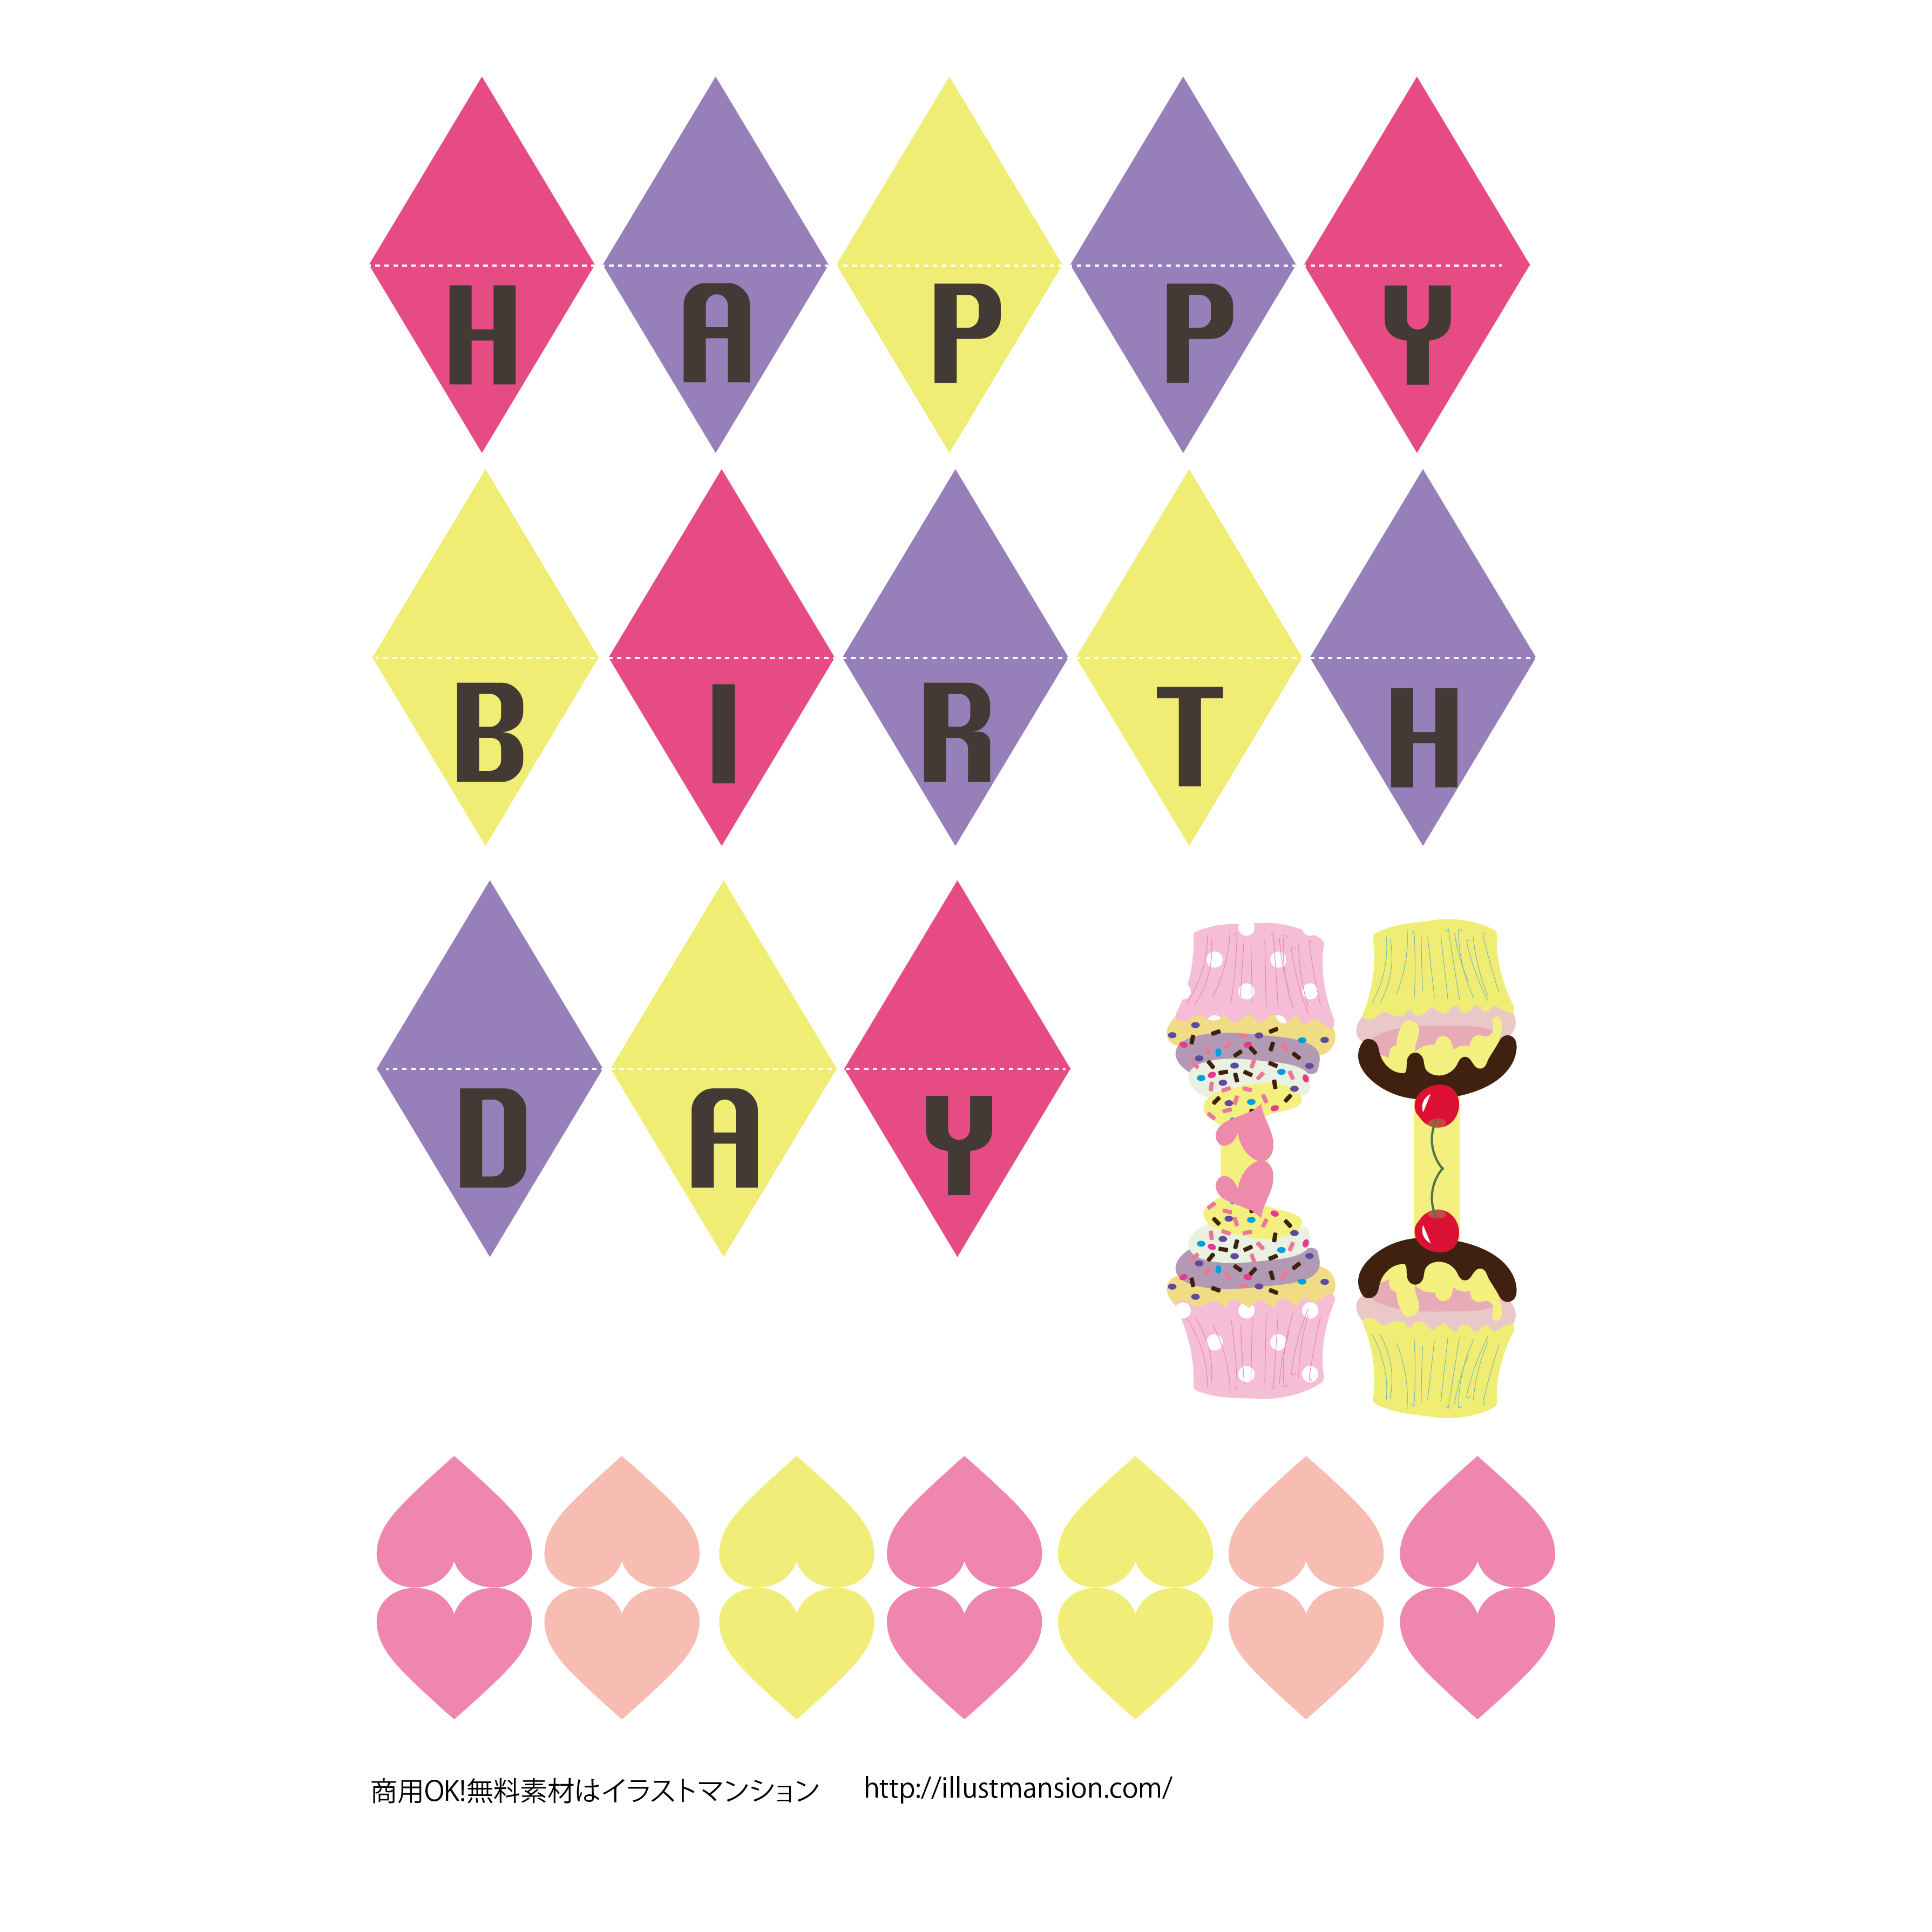 女の子用 カワイイ誕生日の飾り ガーランド 工作系イラスト素材 商用フリー 無料 のイラスト素材なら イラストマンション